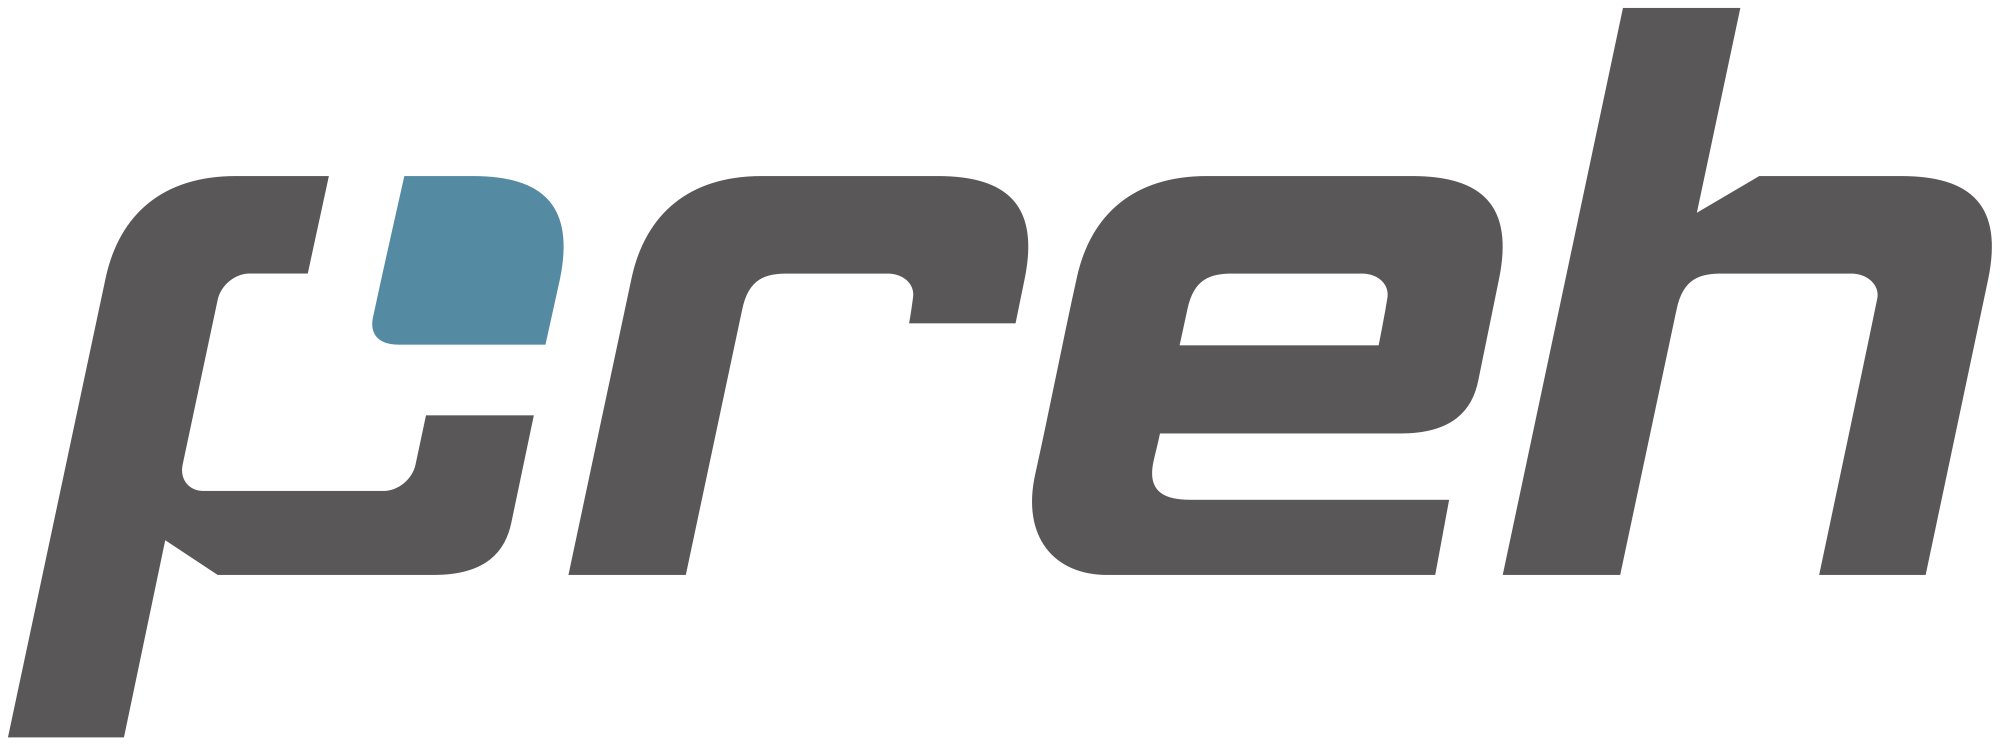 Logo Preh